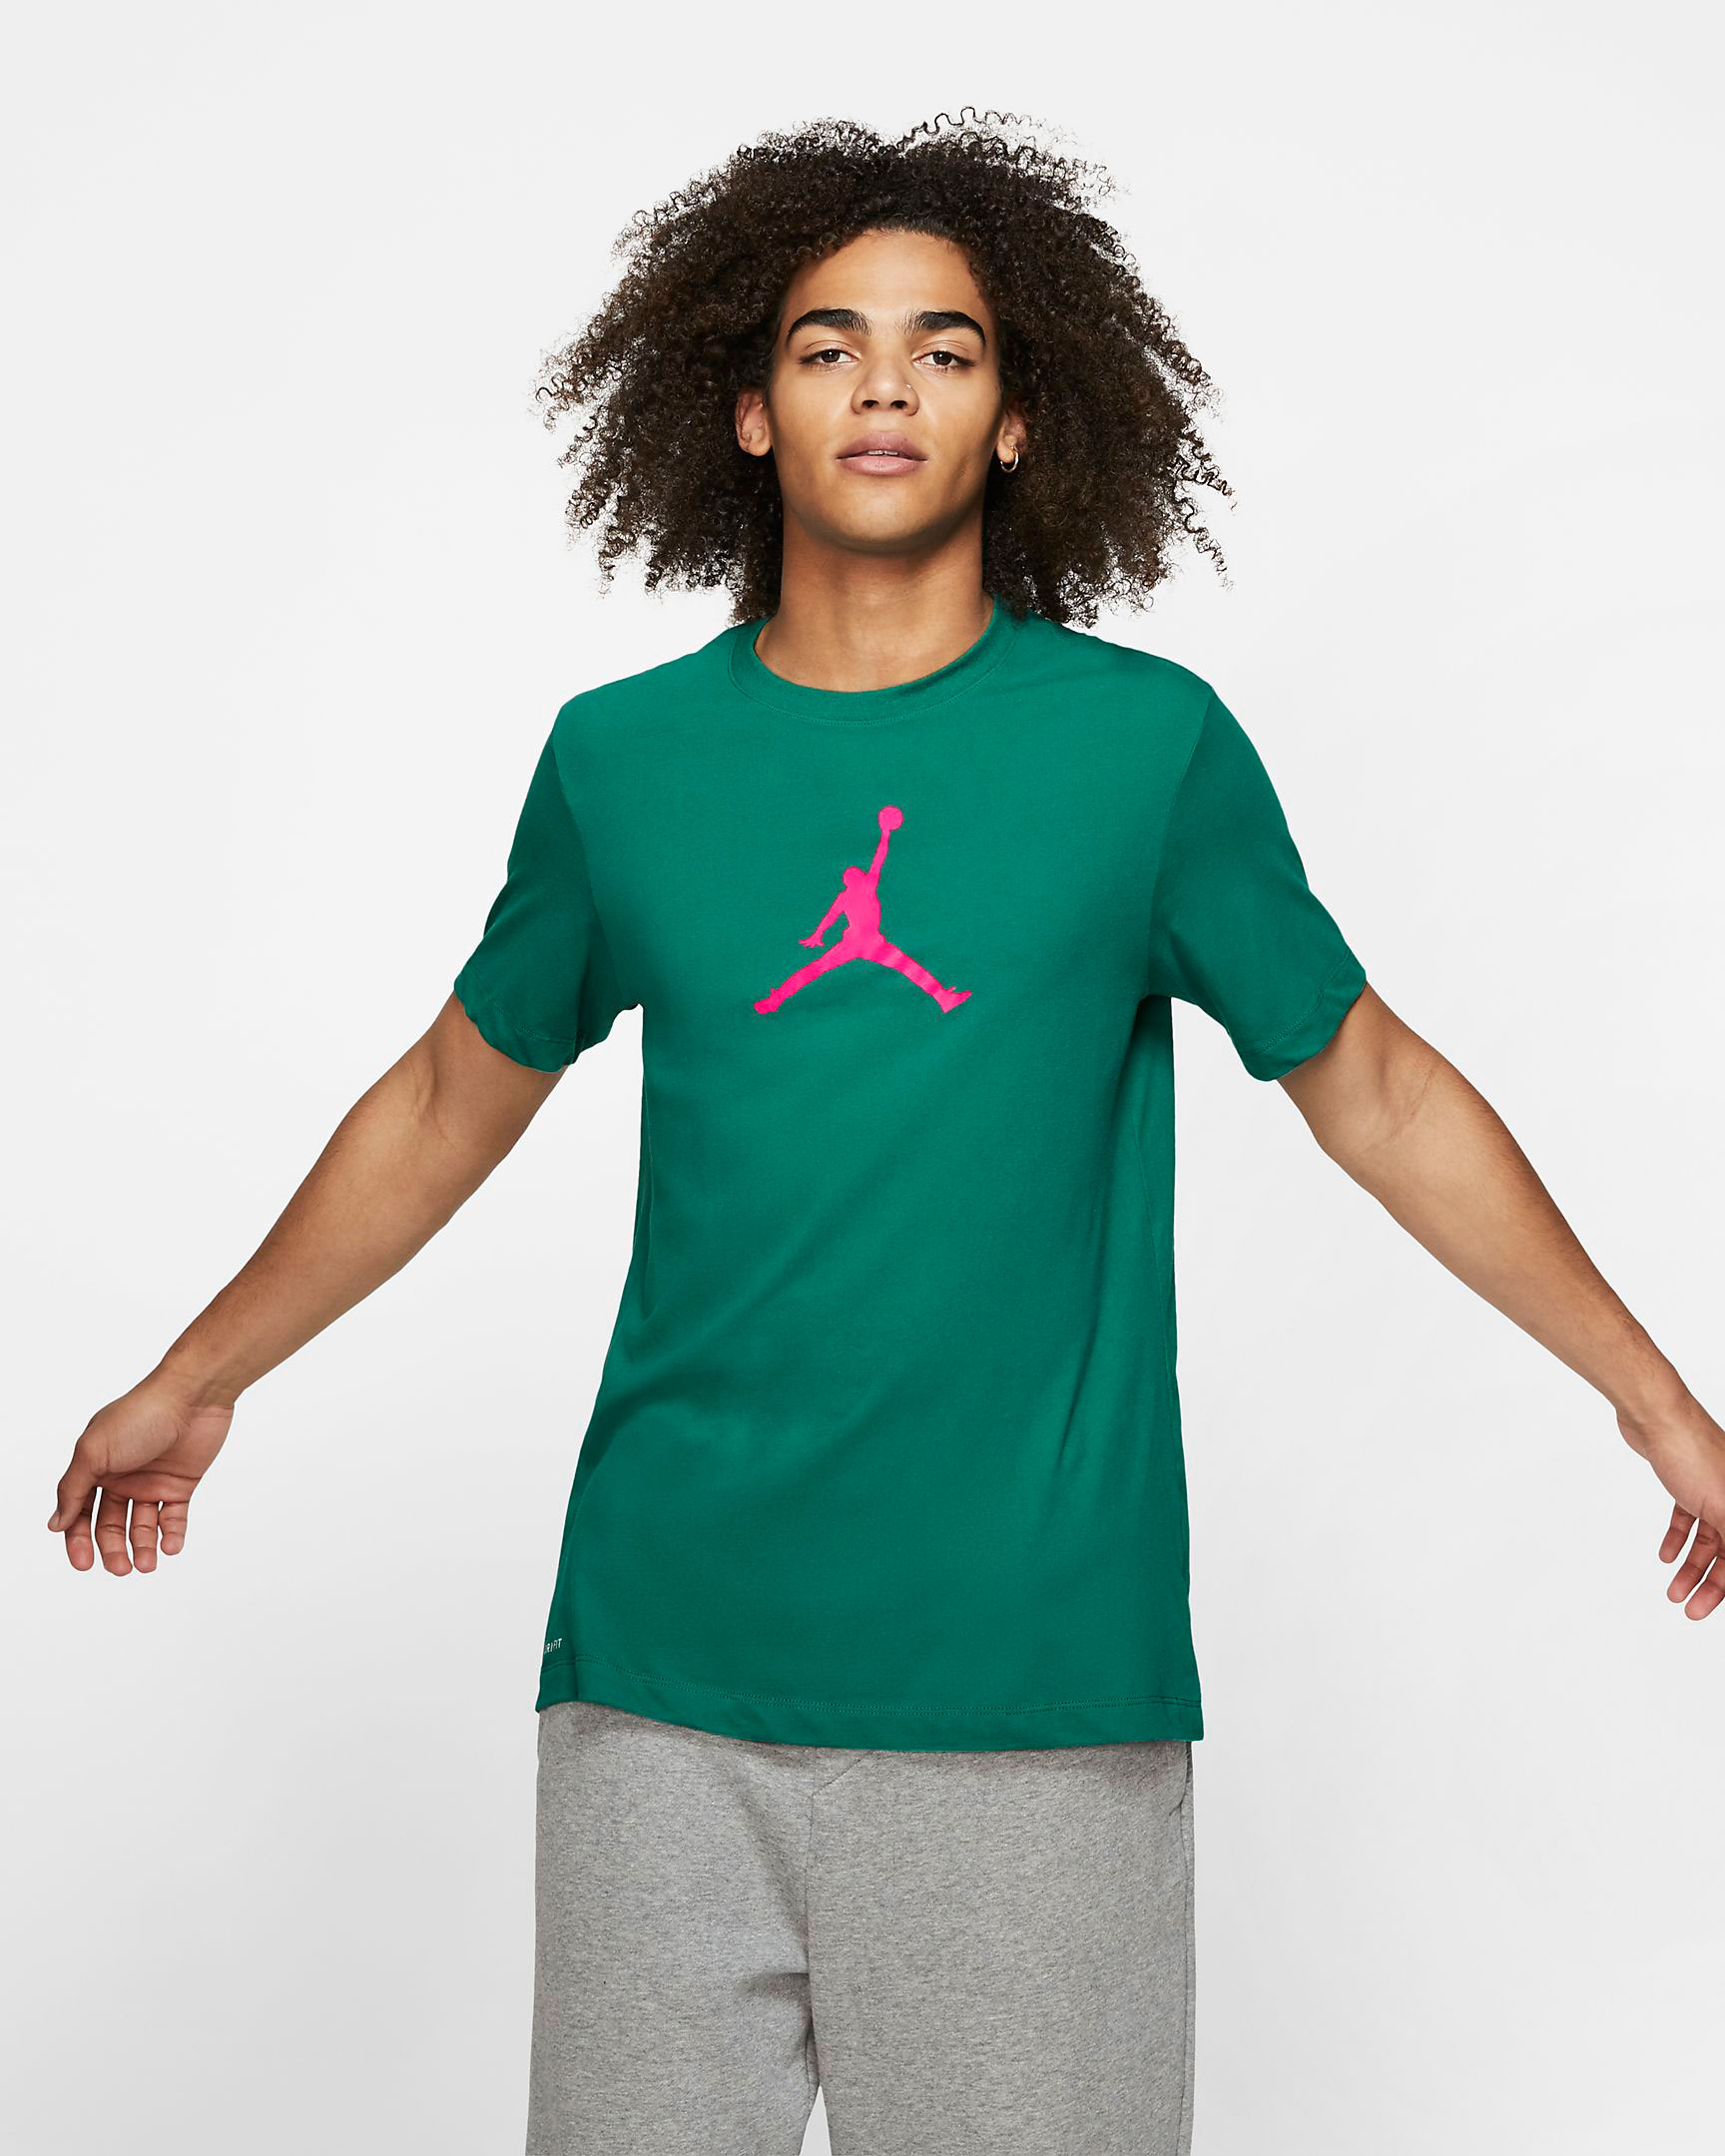 pink and green jordan shirt